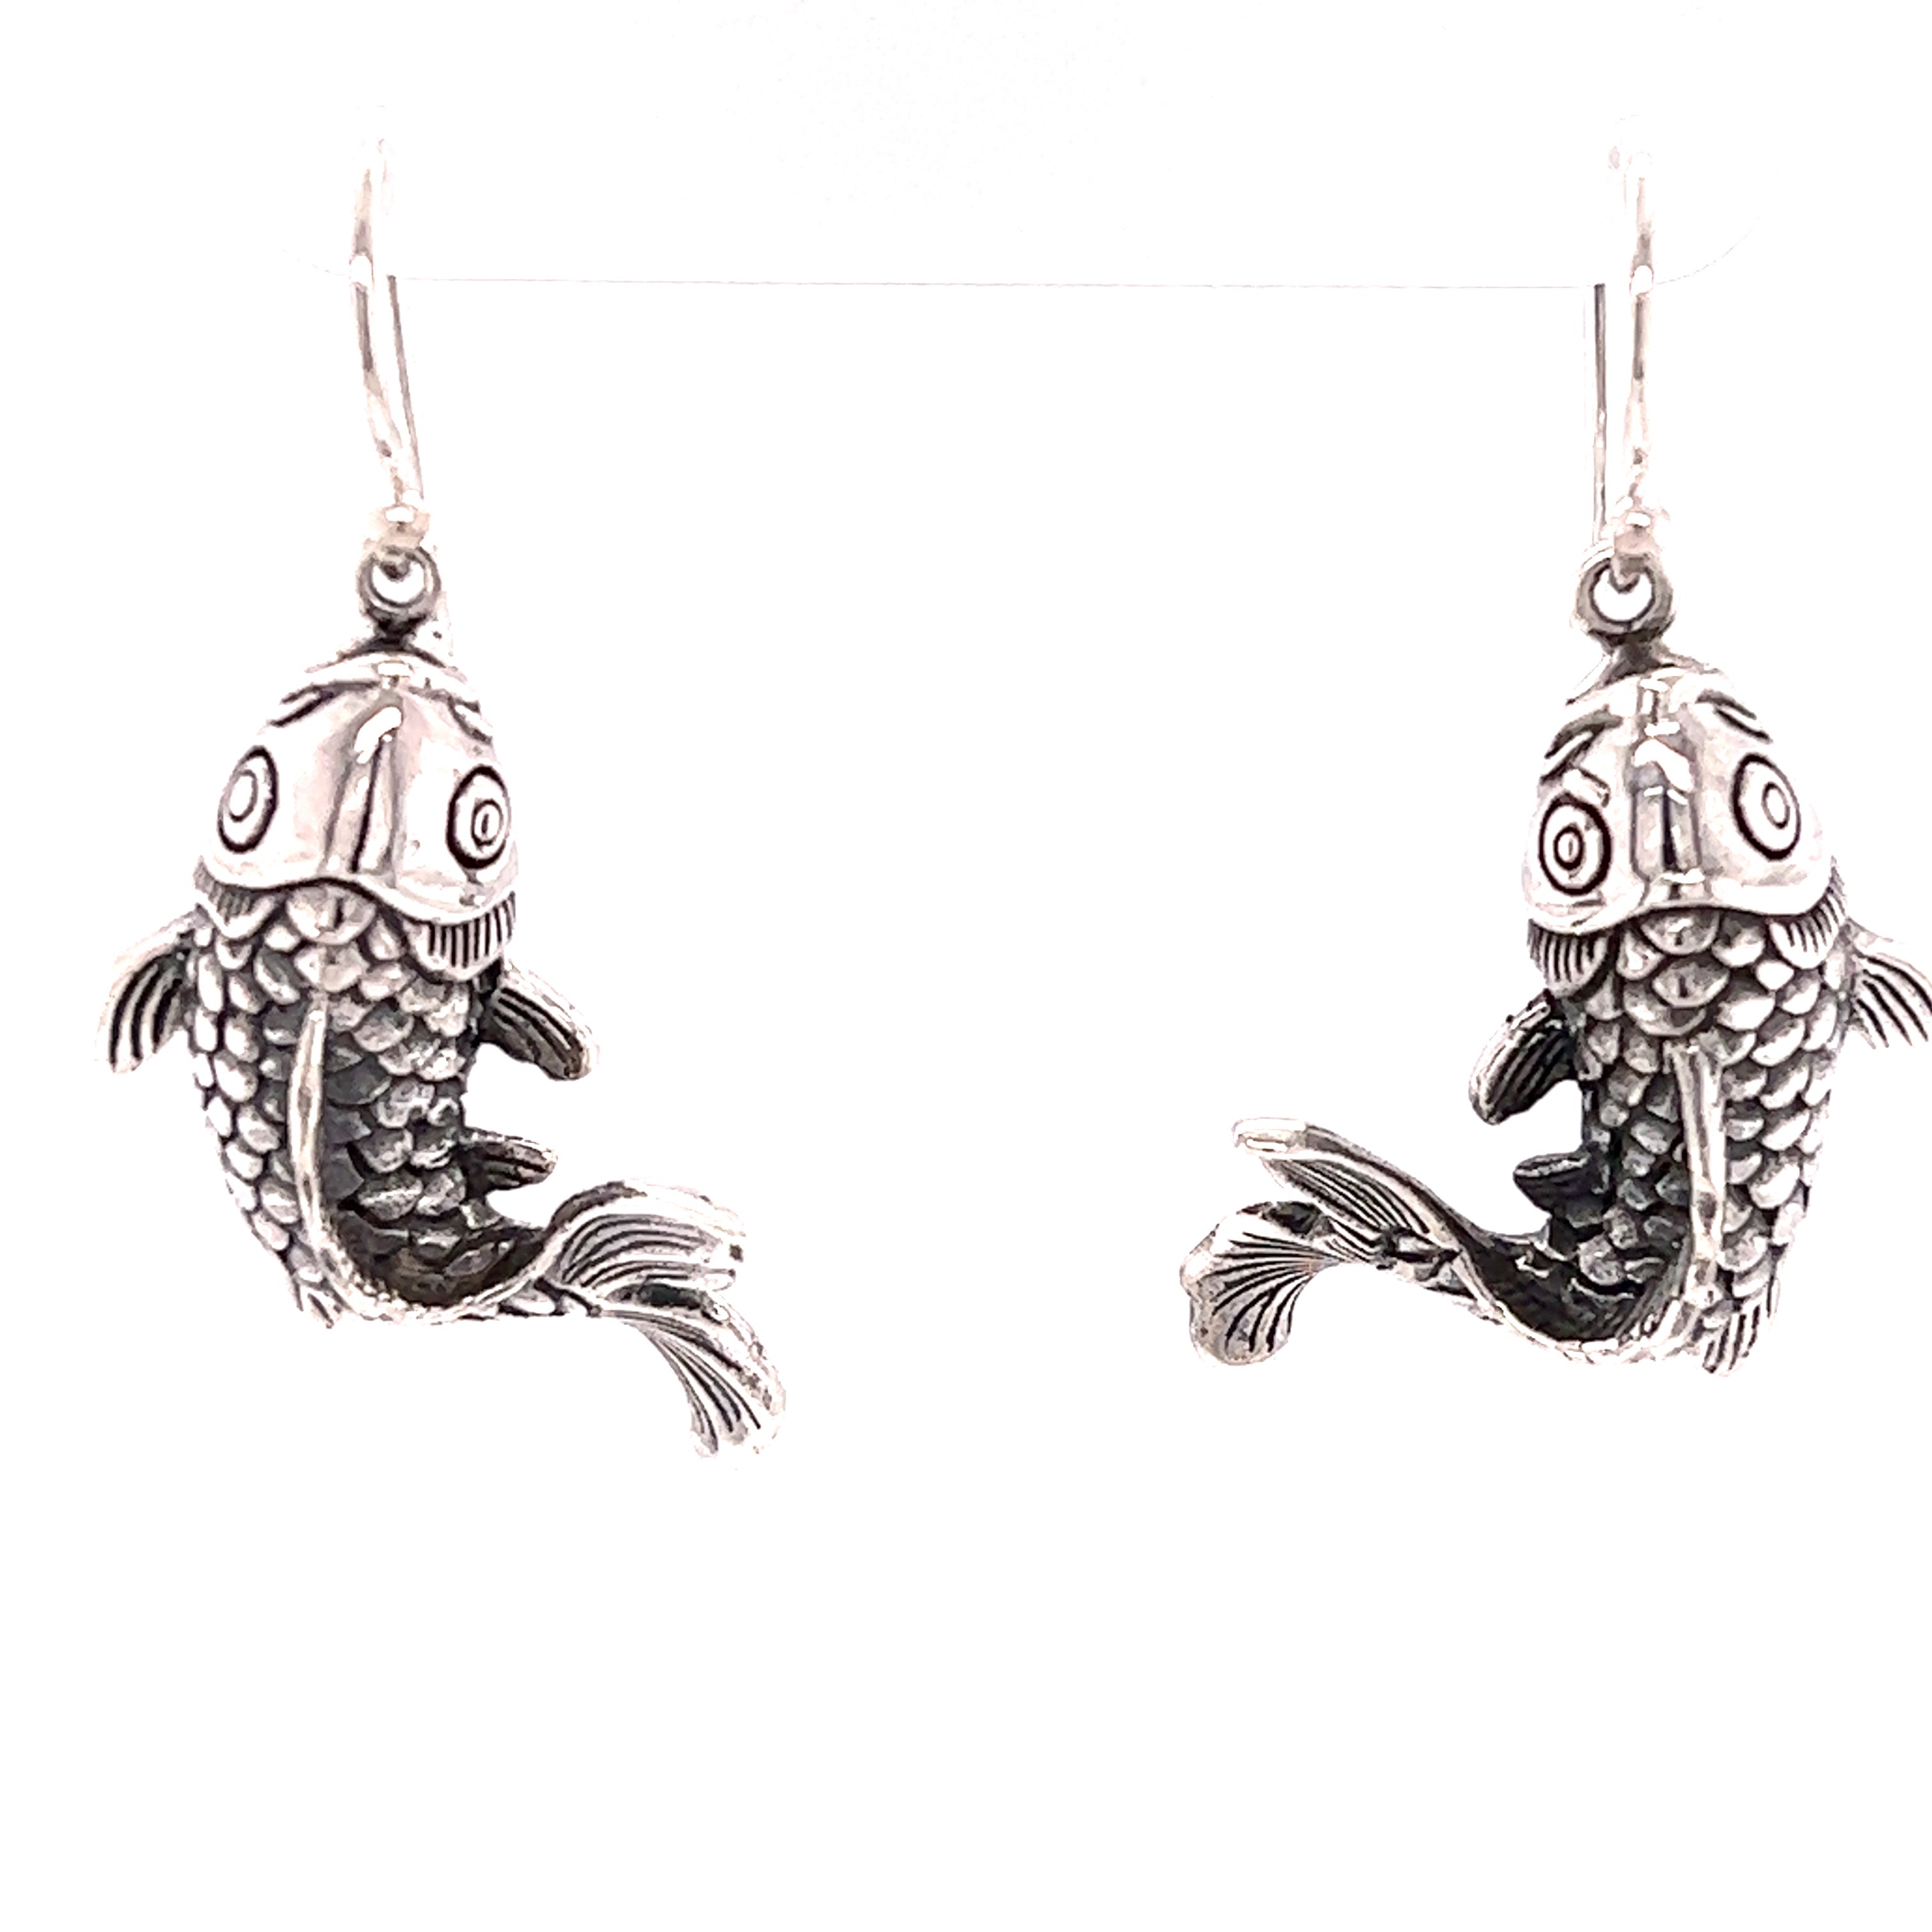 Hammered Silver Dangle Hoop Fish Earrings